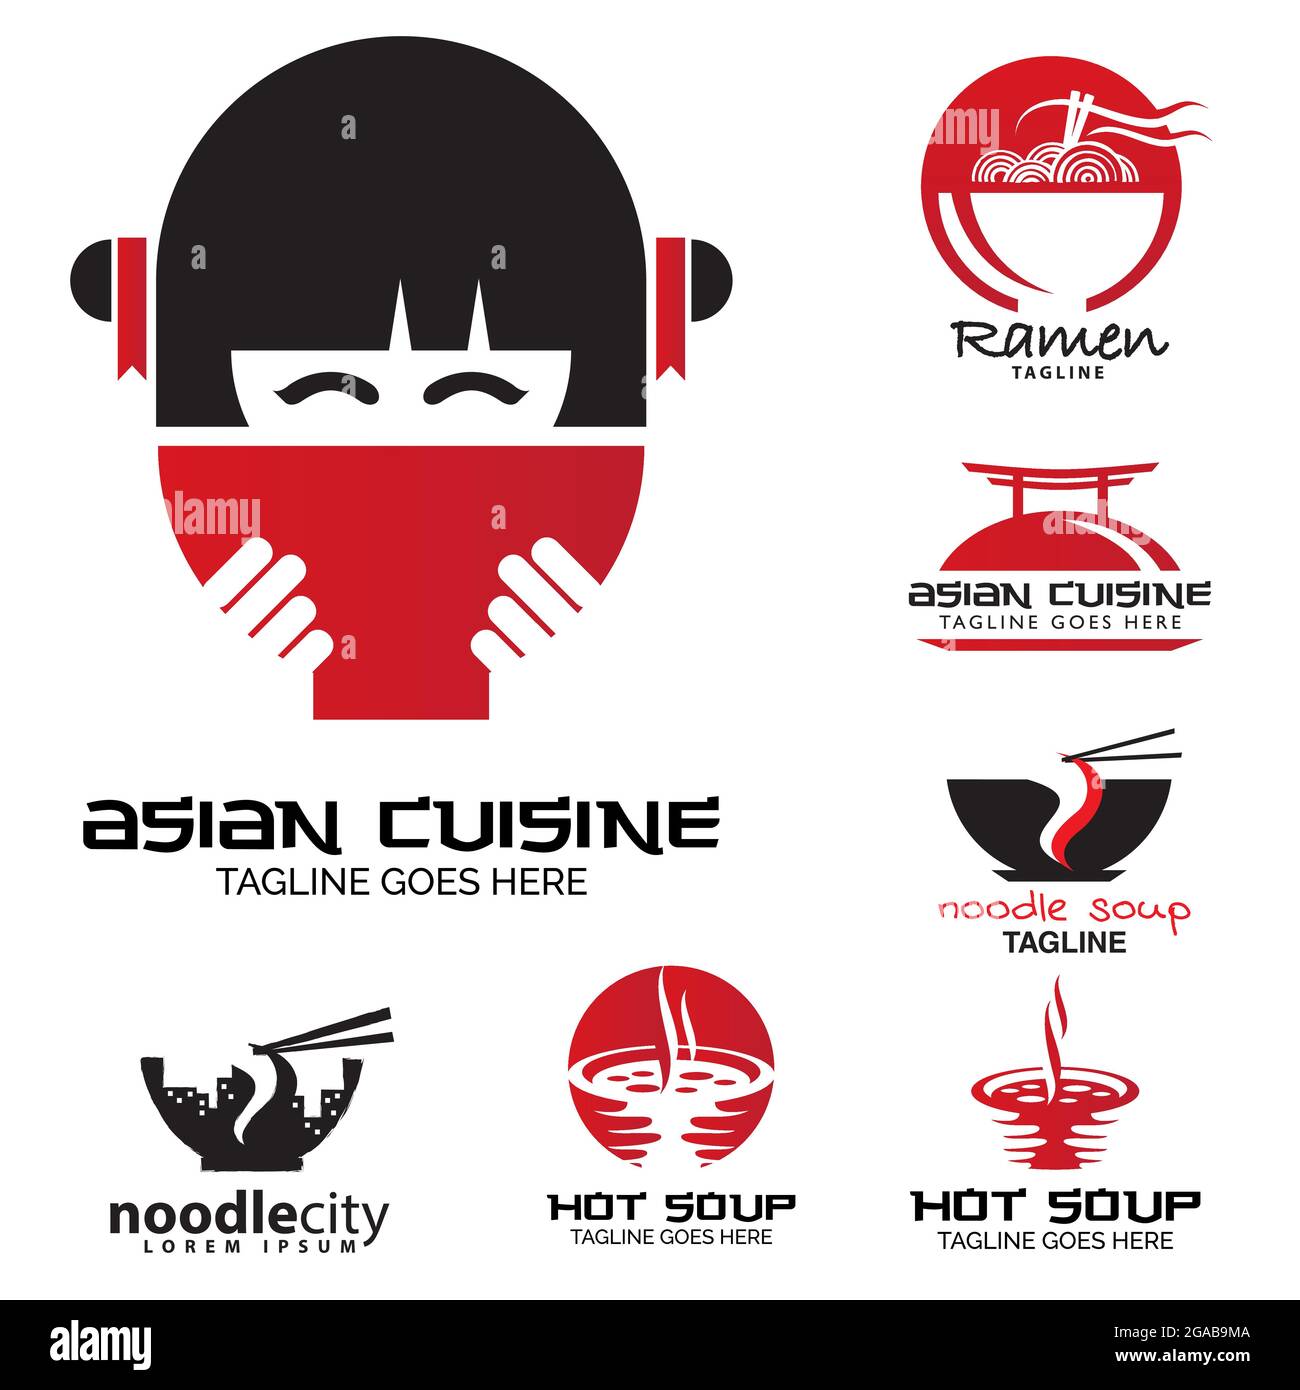 Vecteur de l'ensemble logo cuisine asiatique Illustration de Vecteur